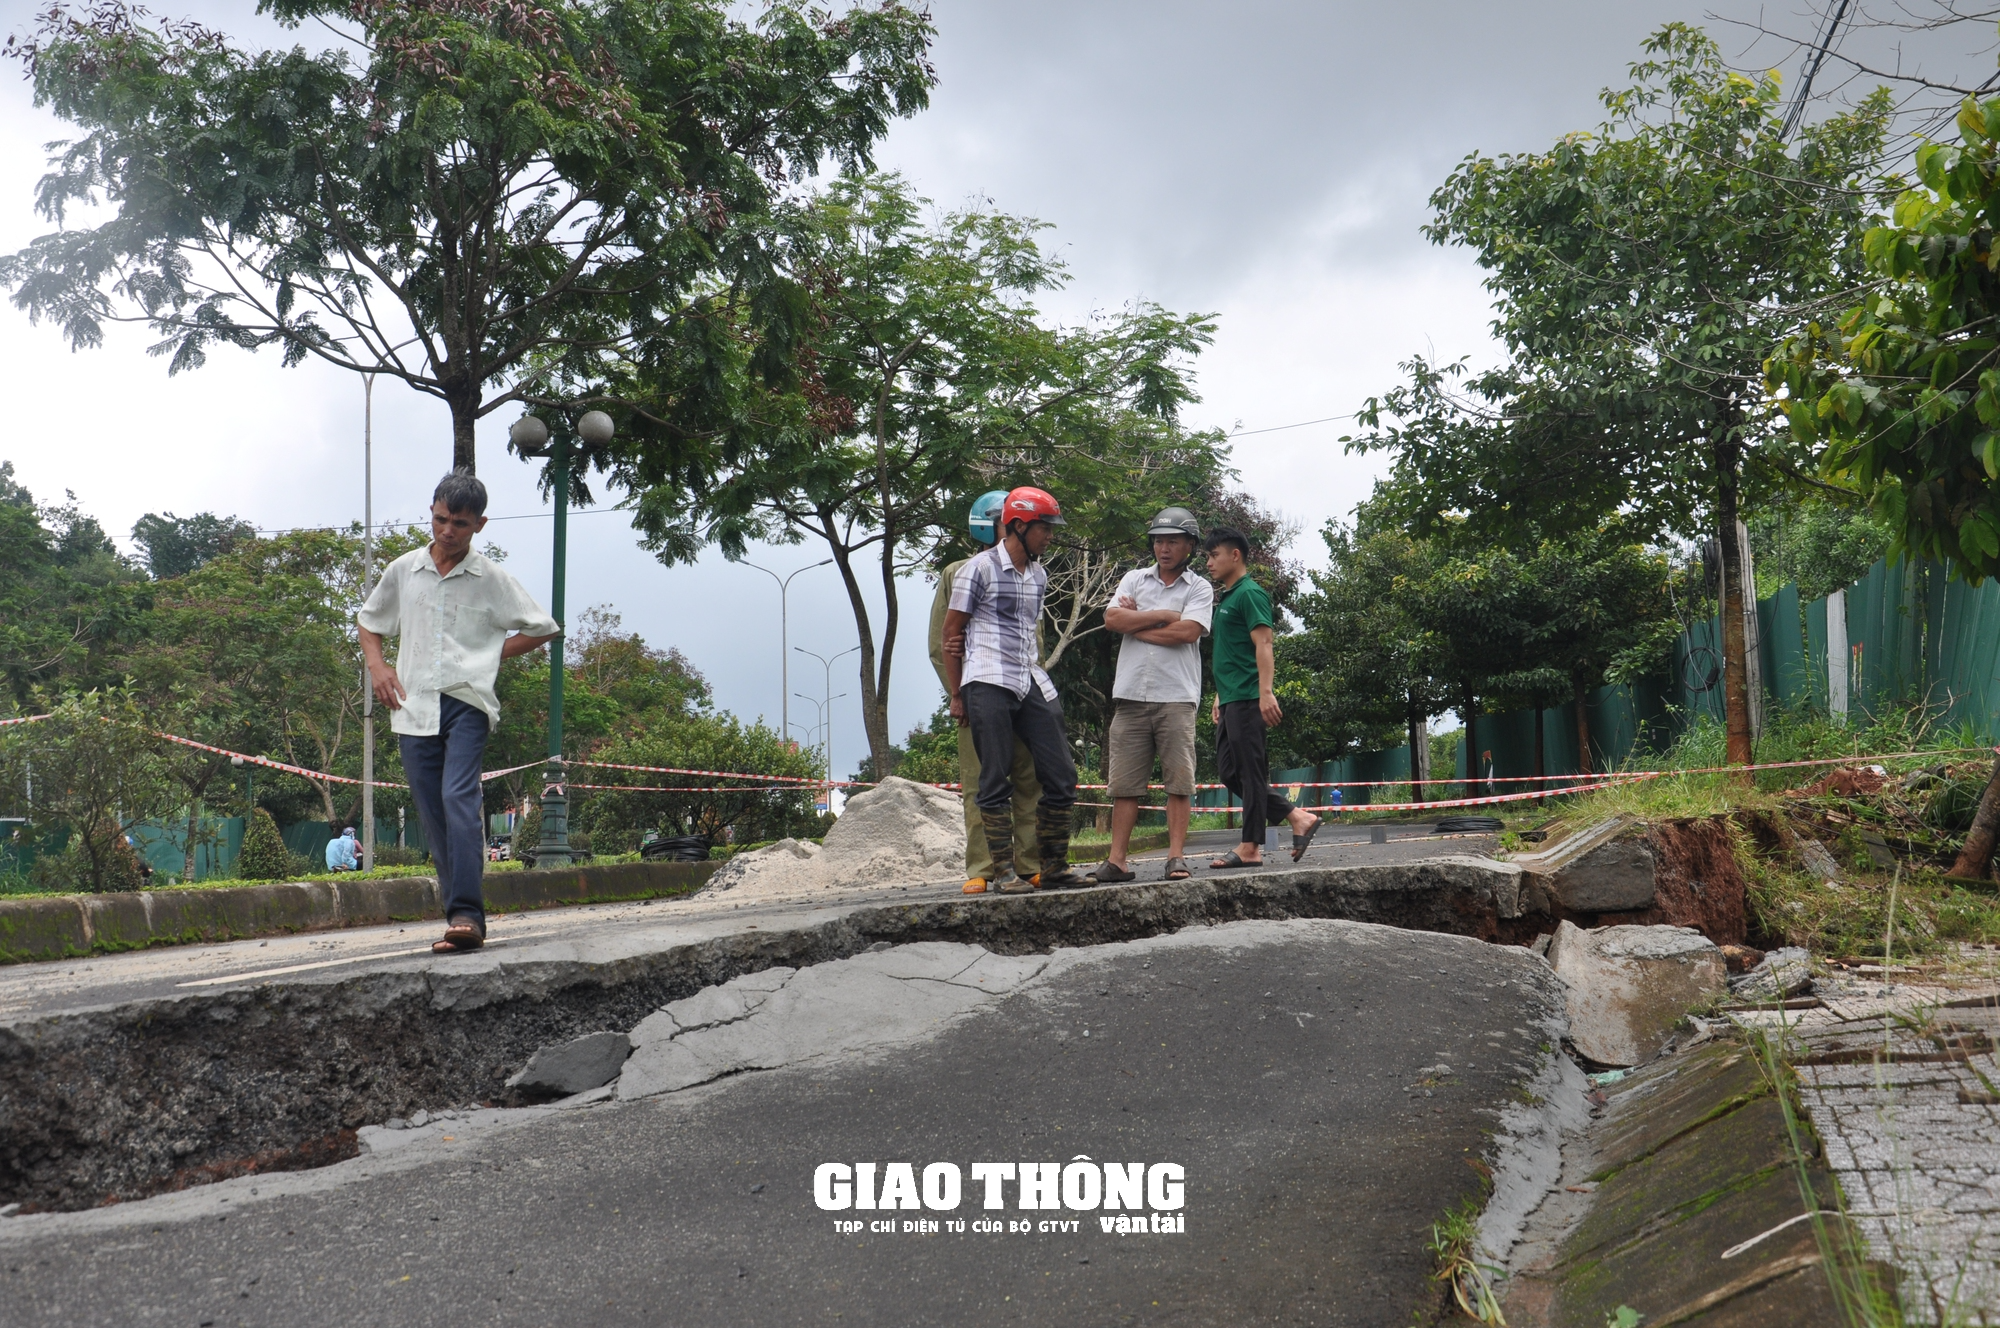 Cận cảnh sụt lún QL14 ở Đắk Nông: Vết sụt trượt liên tục mở rộng, nguy cơ mất đường - Ảnh 3.